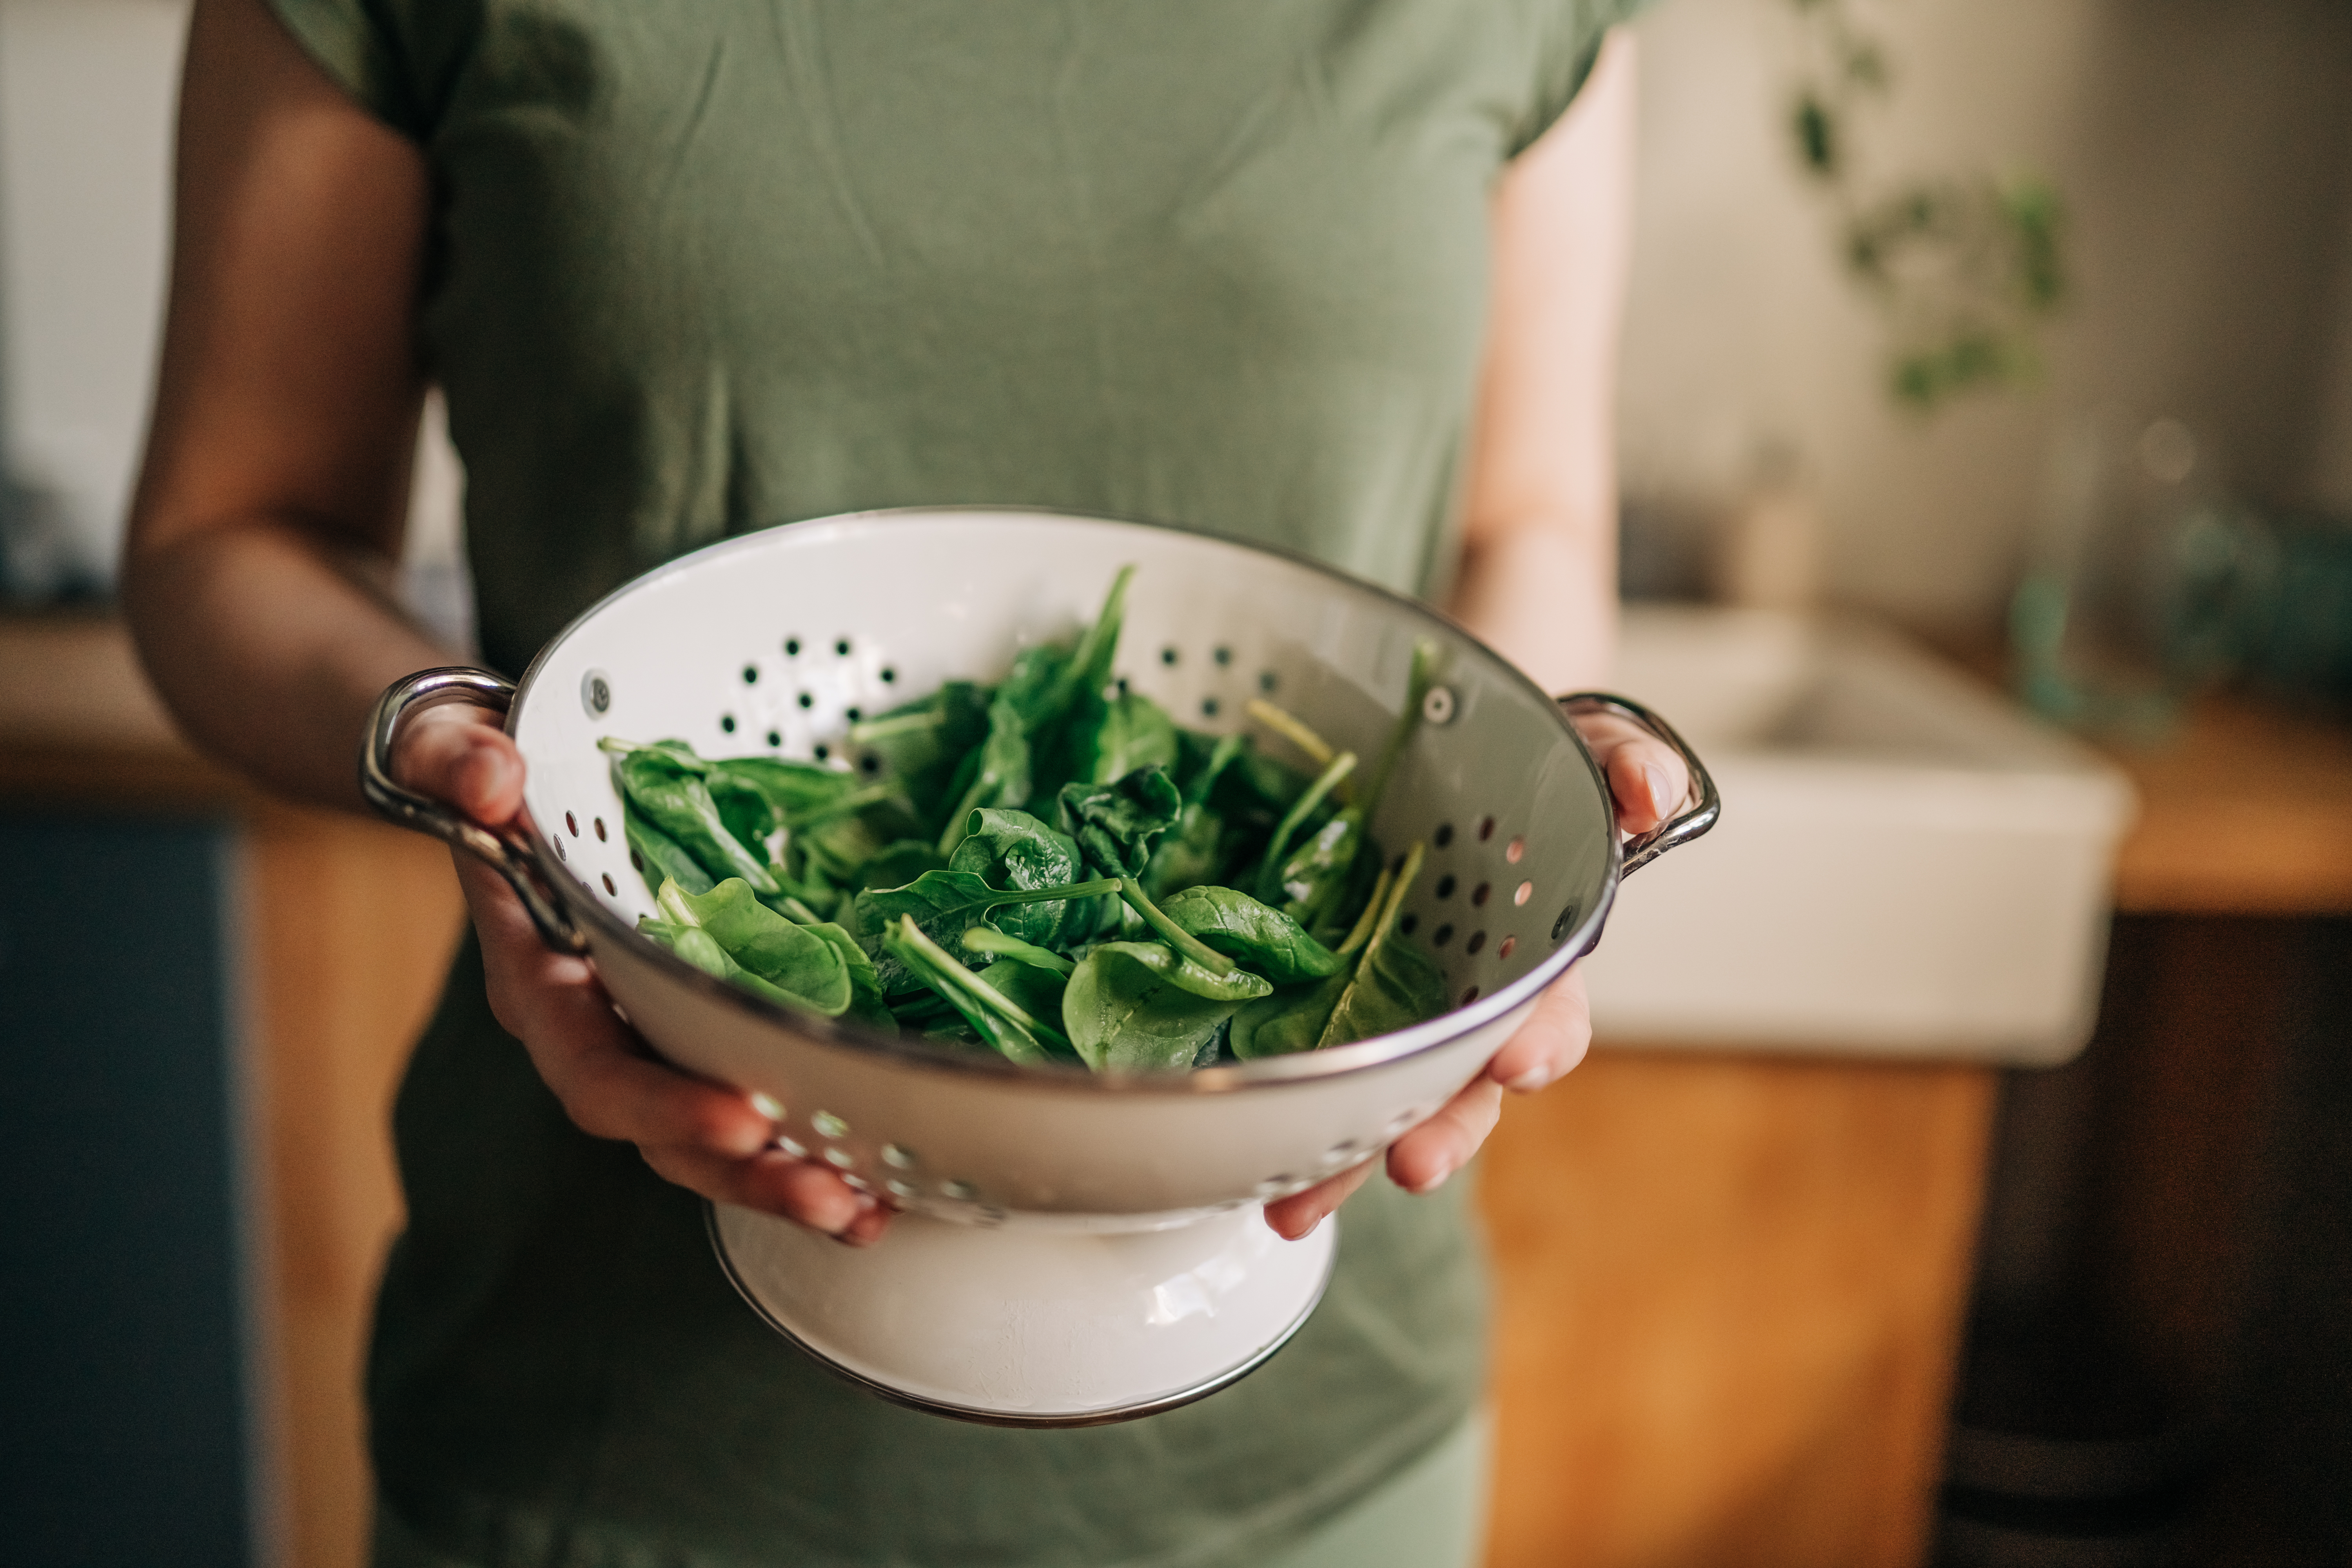 Como conclusión final, los expertos sugirieron que elegir alimentos saludables de origen vegetal podría ser útil para prevenir el cáncer de mama
(Getty Images)